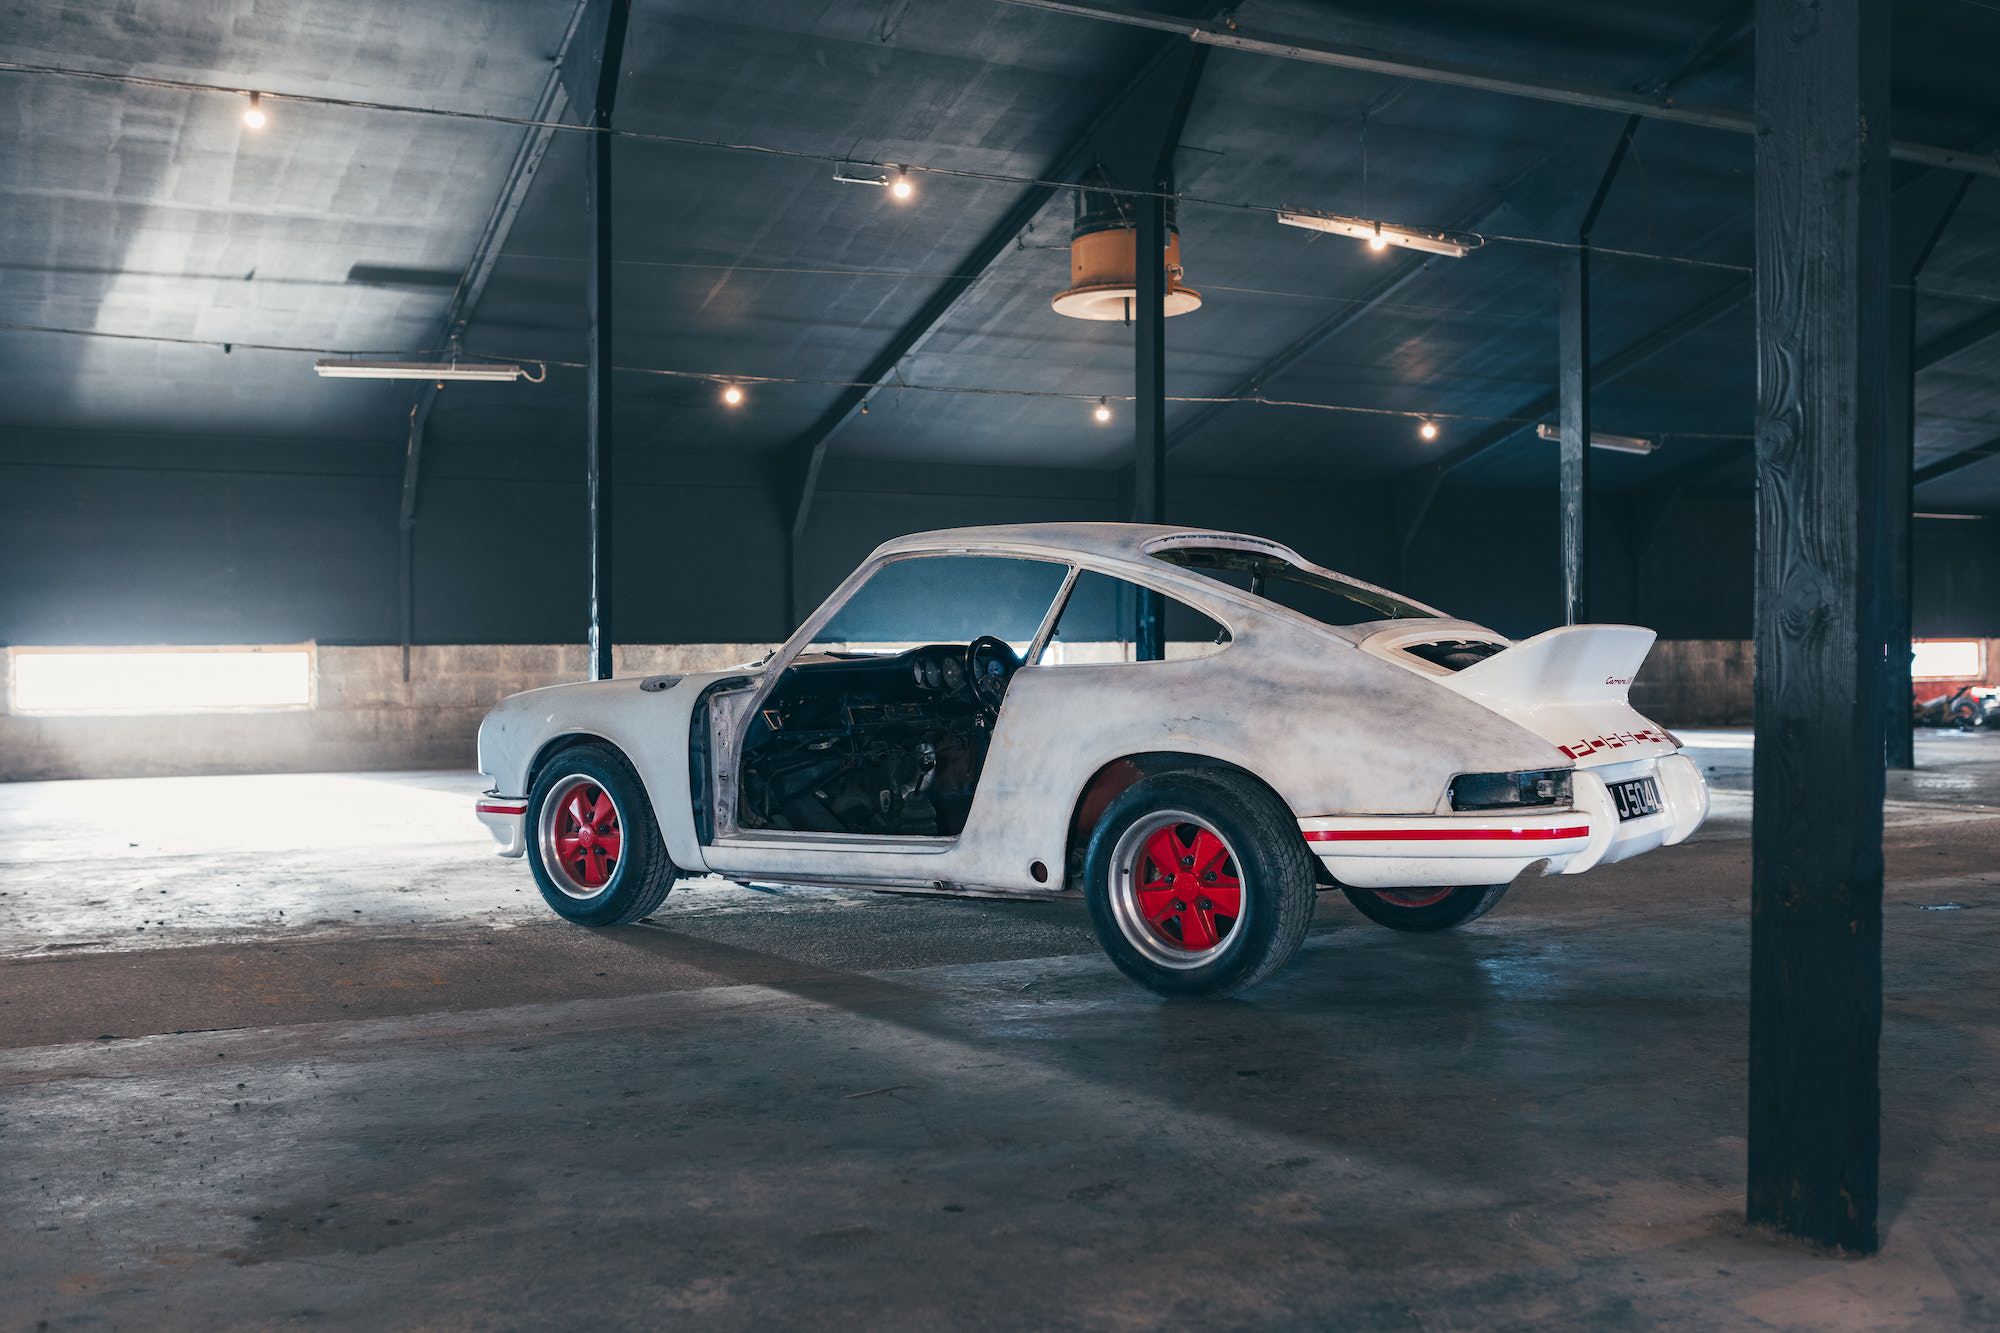 For Sale: A Porsche 911 2.7 Project Car